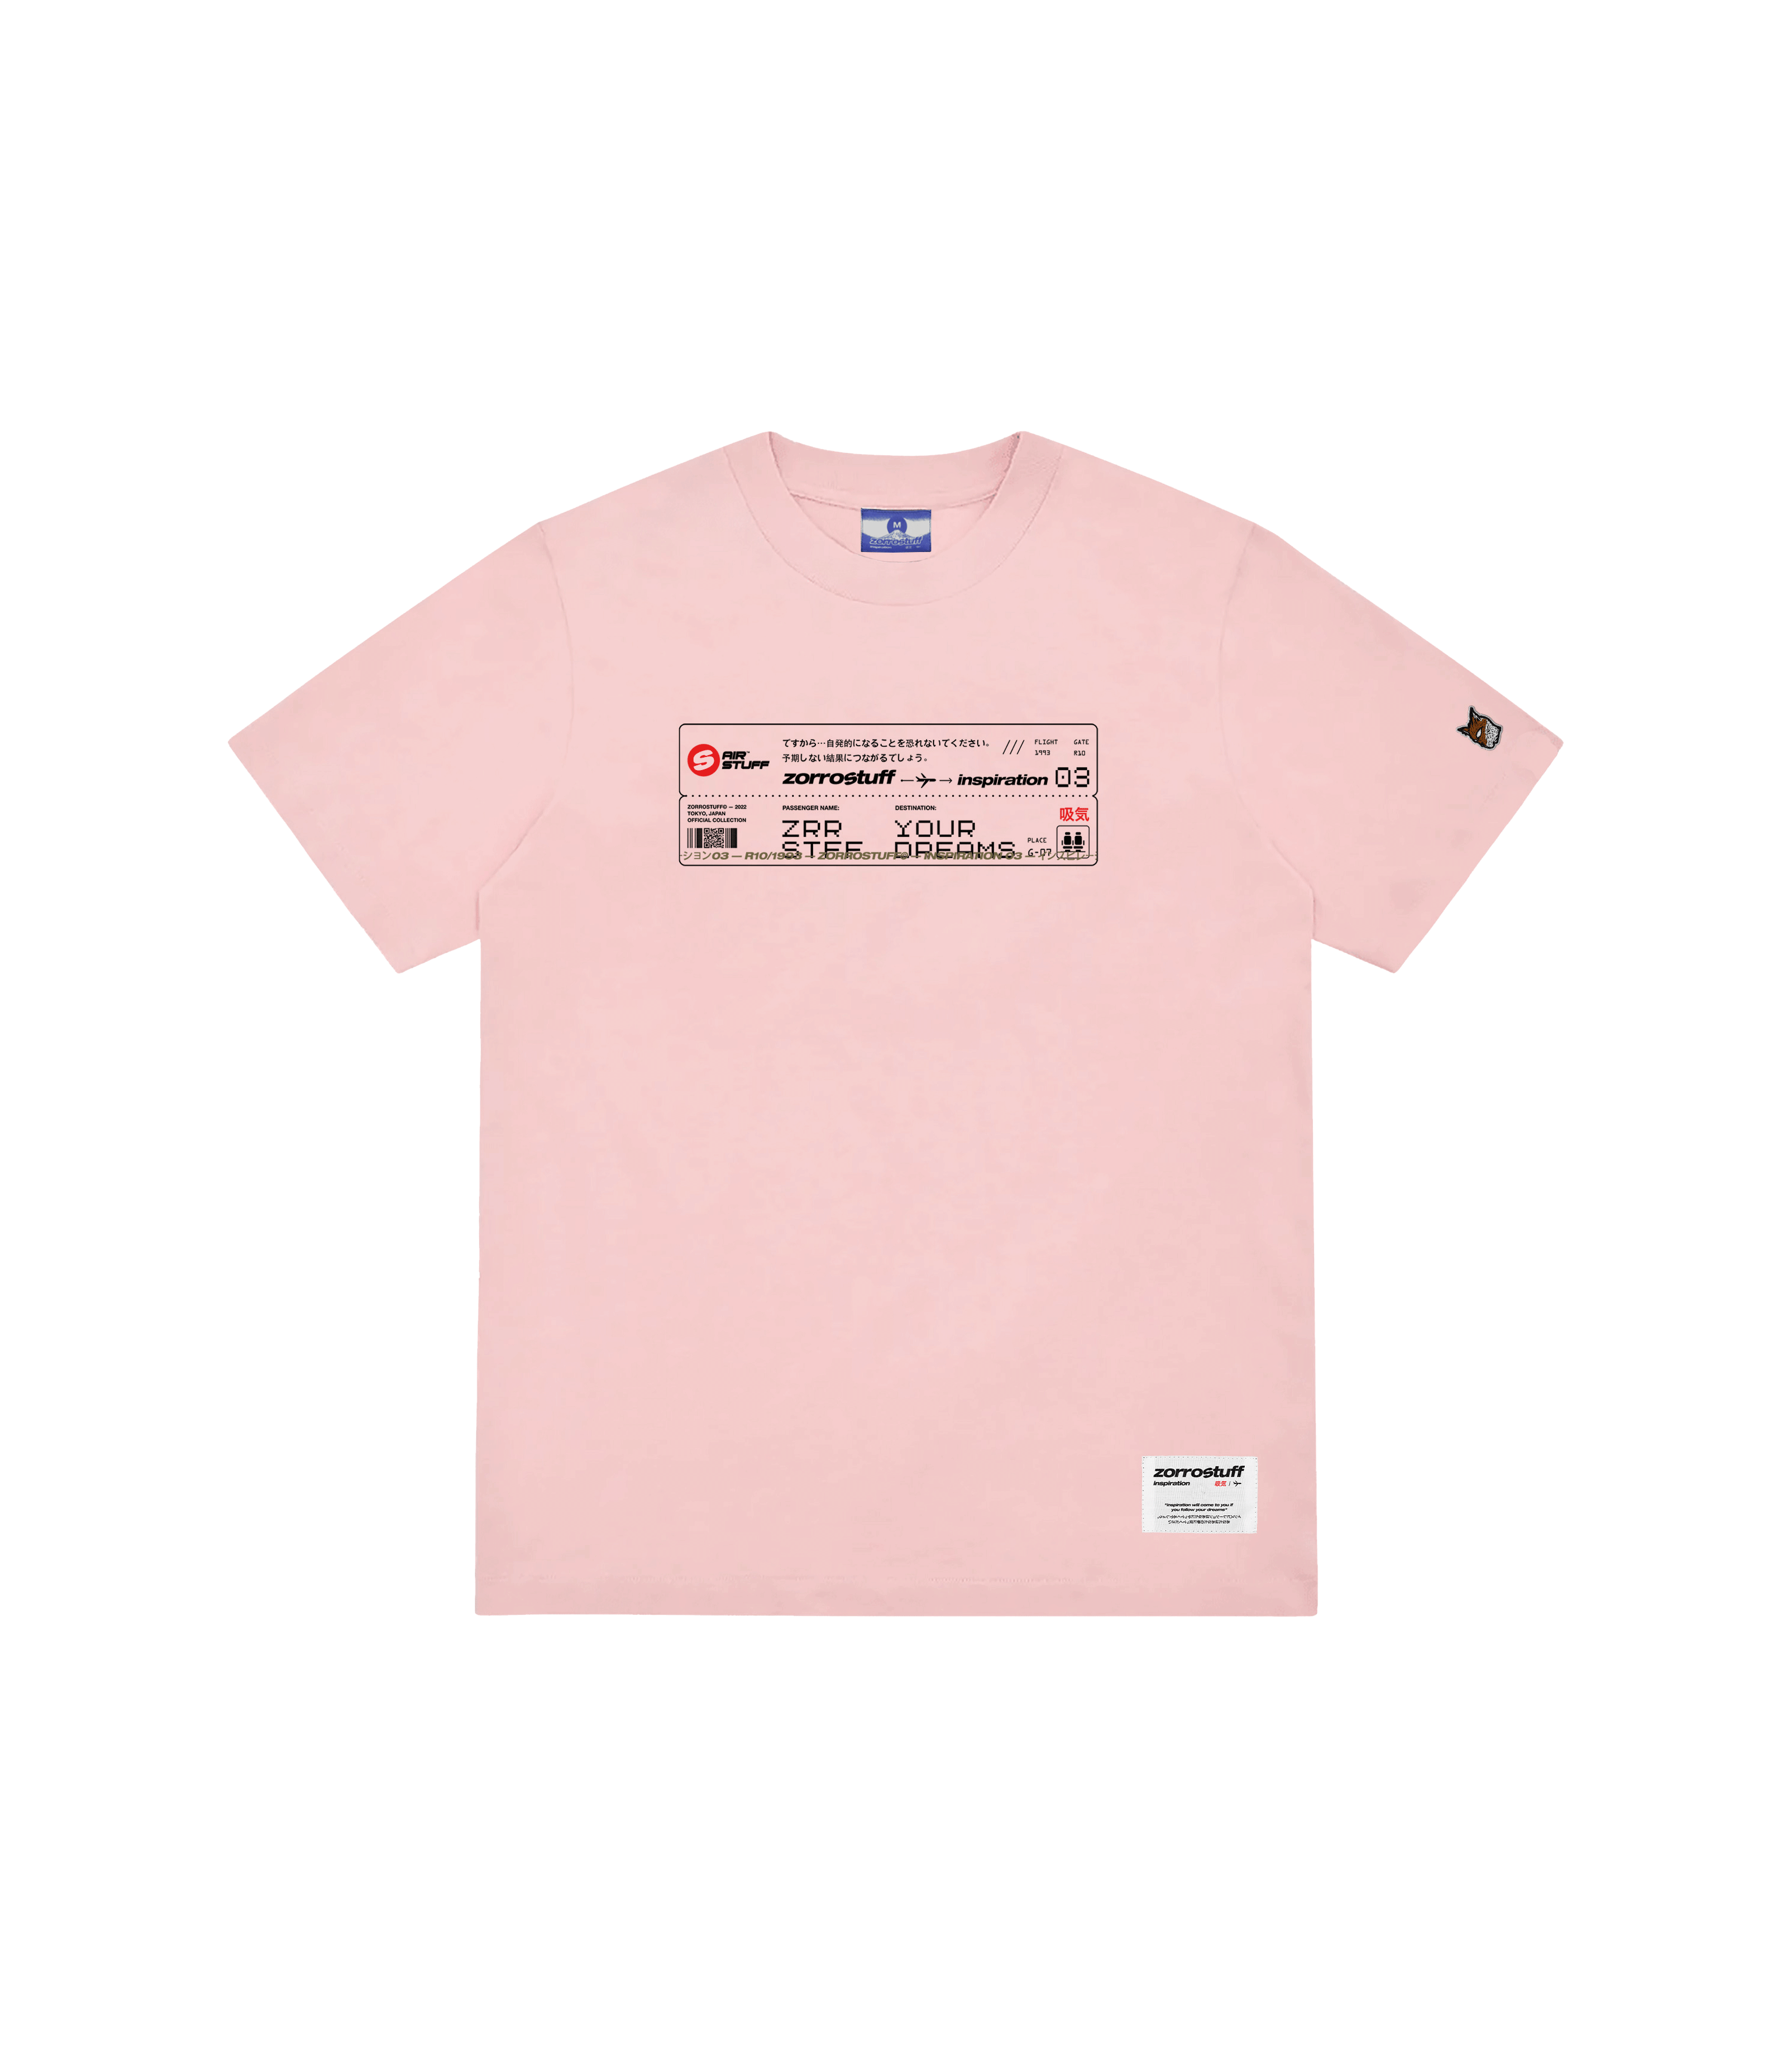 Zorro Stuff T-Shirts Inspiration T-Shirt Pink